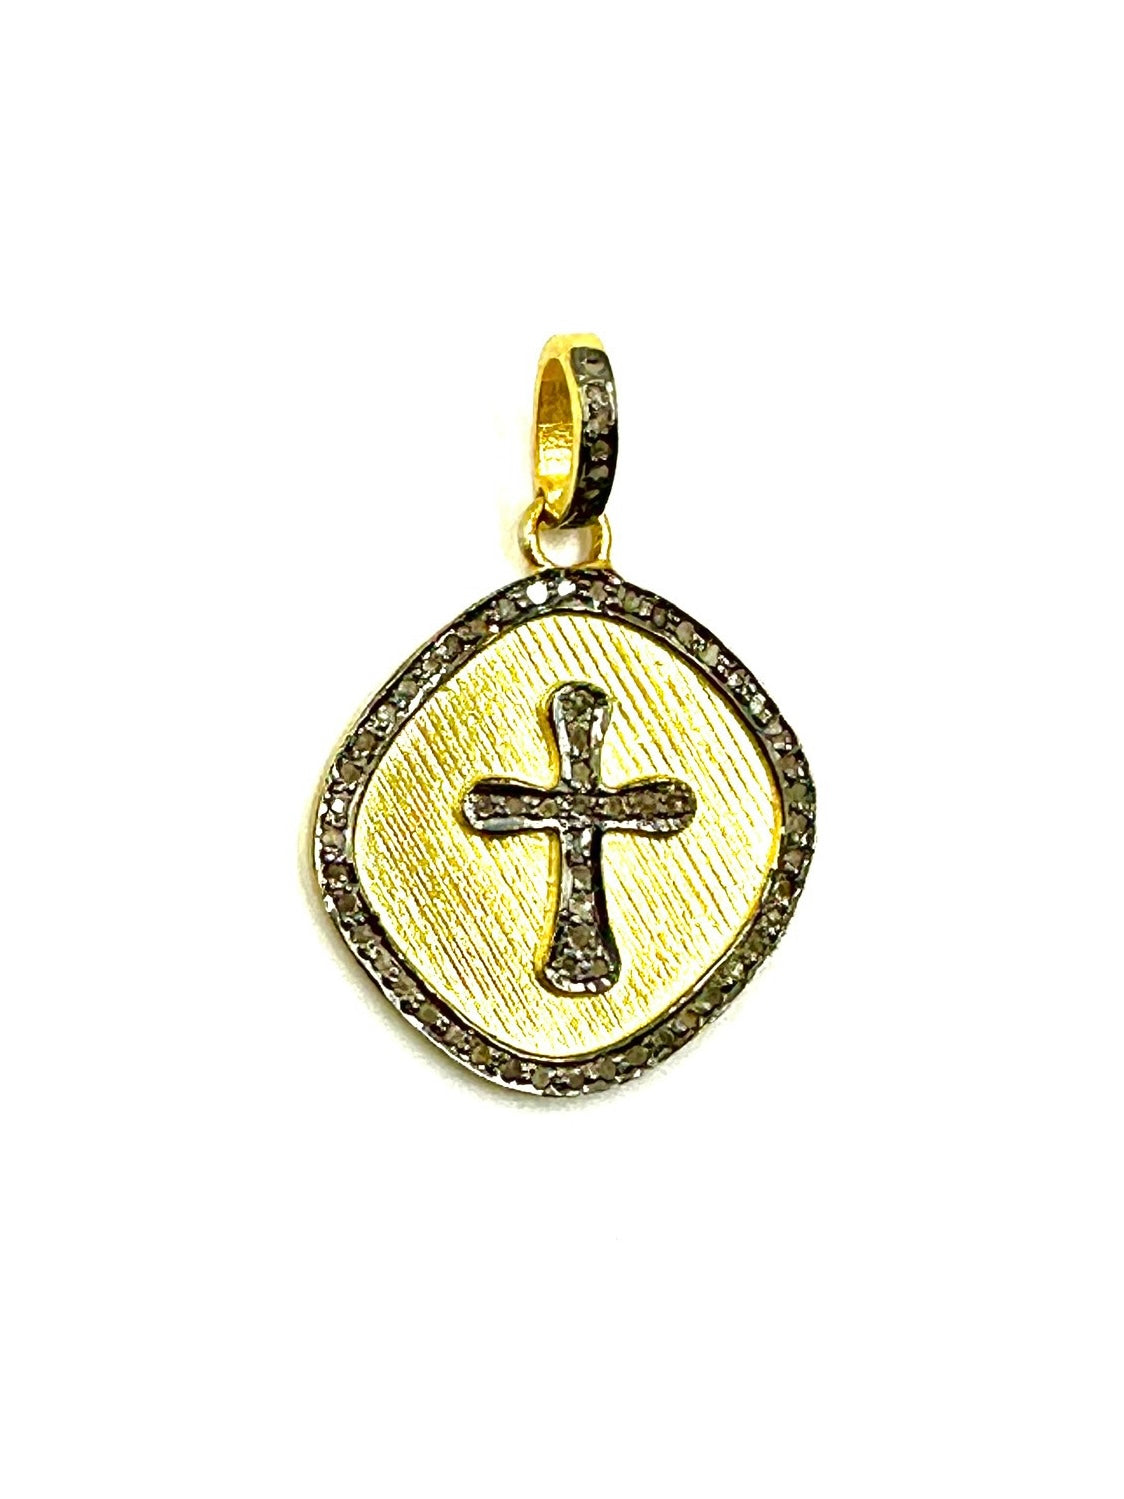 Faith - necklace with diamond cross pendant